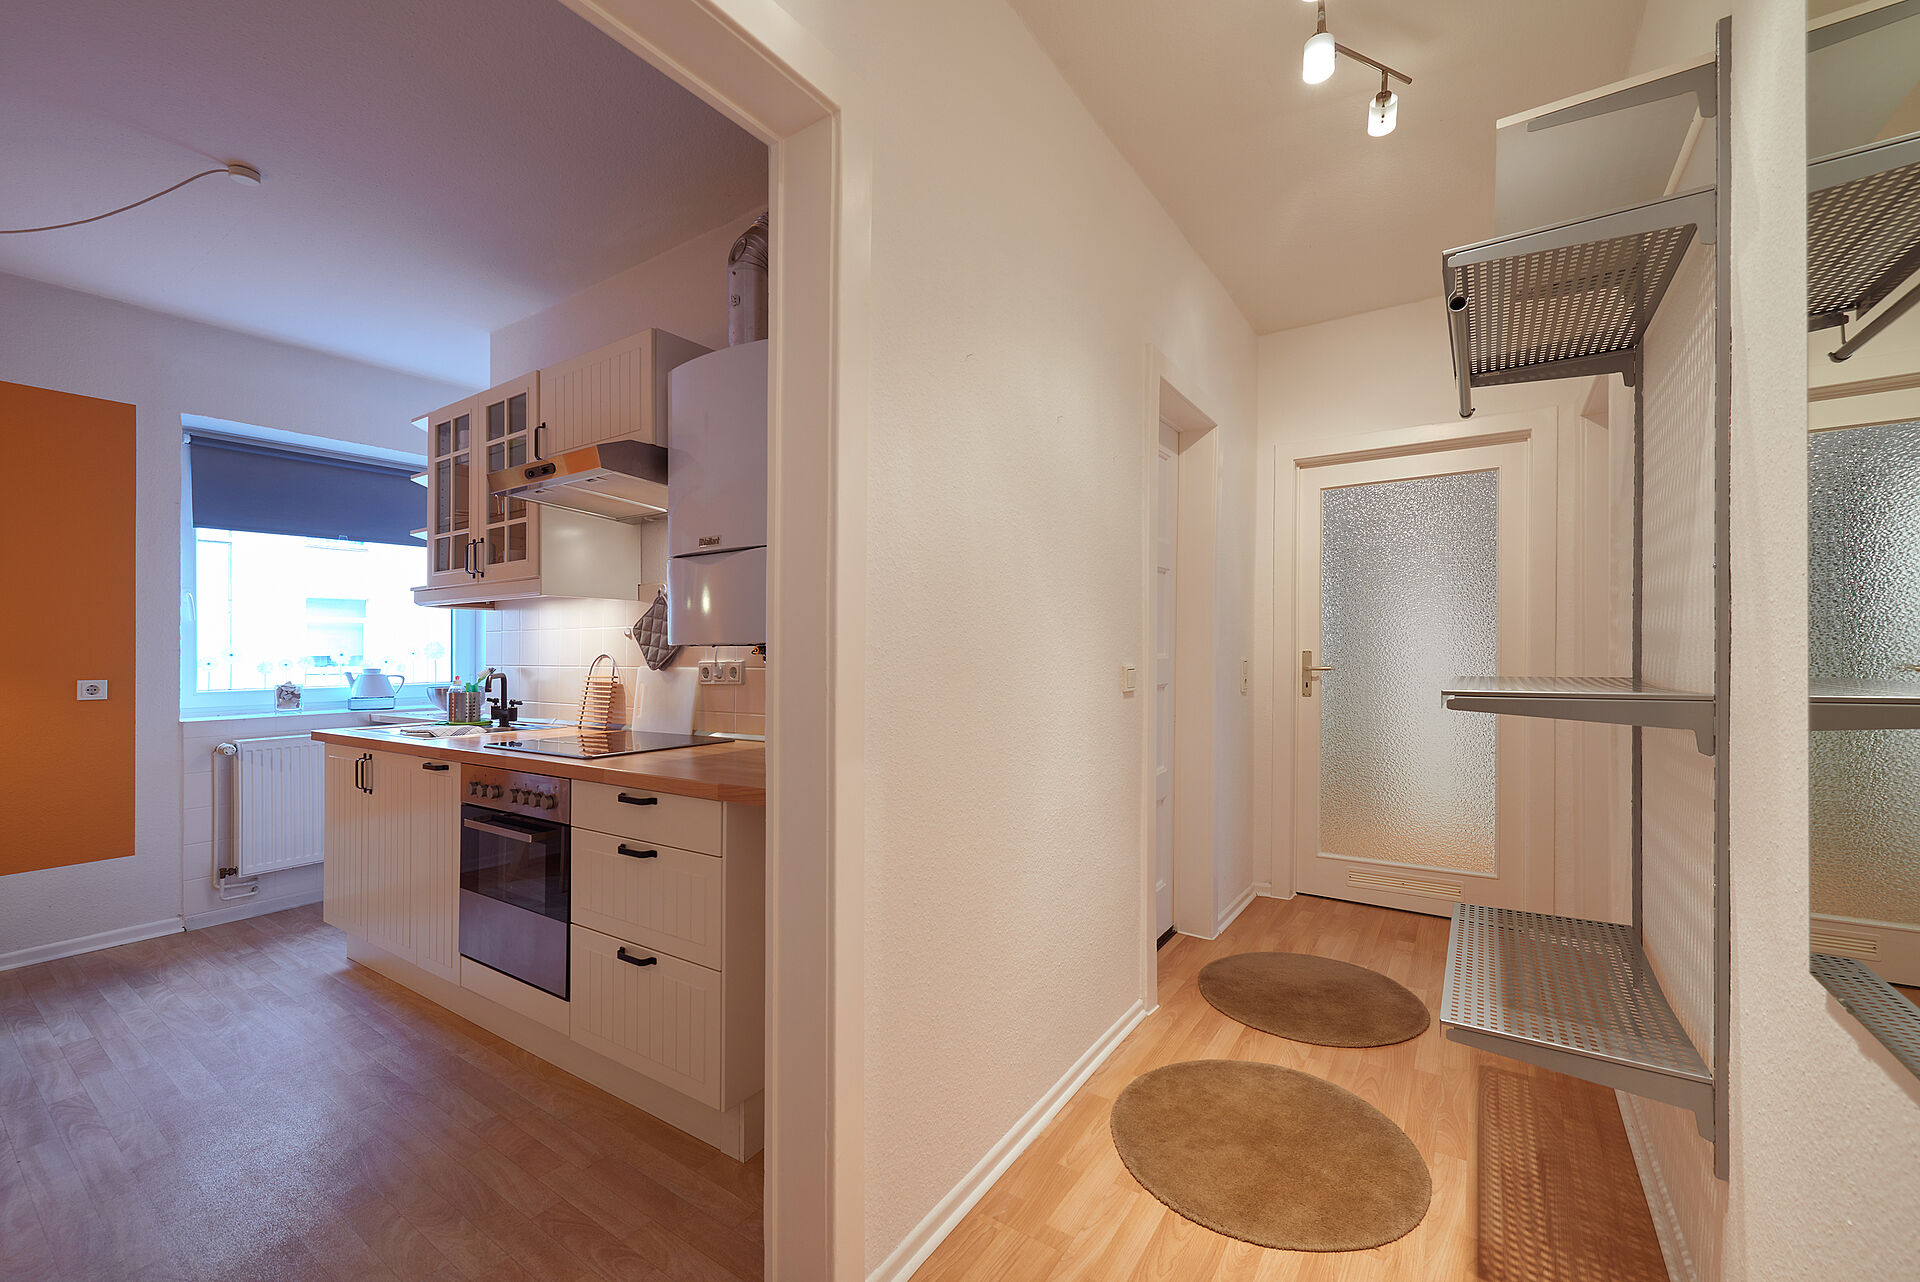 Blick auf dem Wohnungsflur mit Regal und kleinen runden Teppichen Richtung Küche